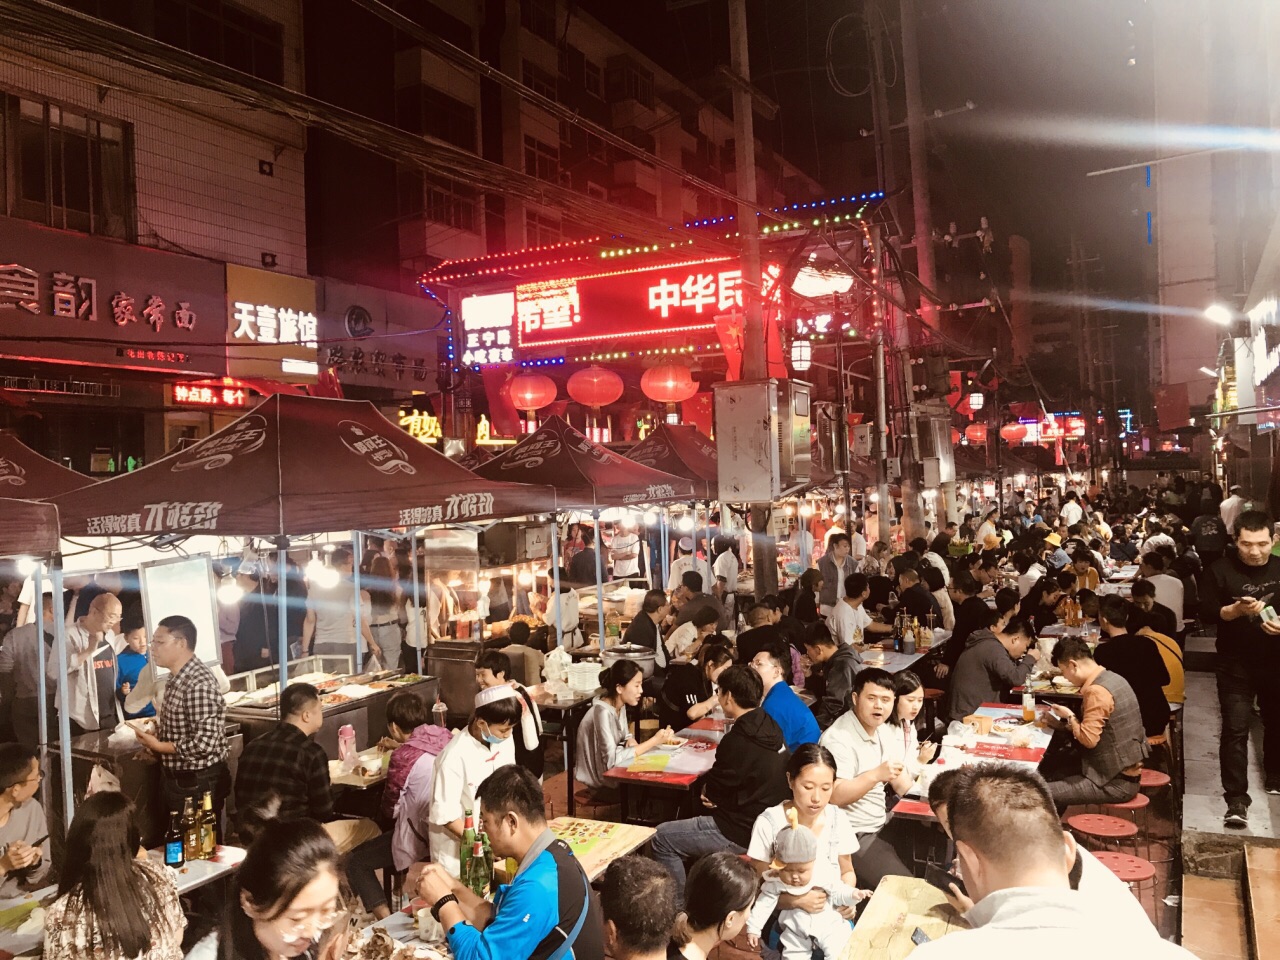 2020年上海锦江乐园夜市照片 - 吃喝玩乐 - 哎呦哇啦au28.cn